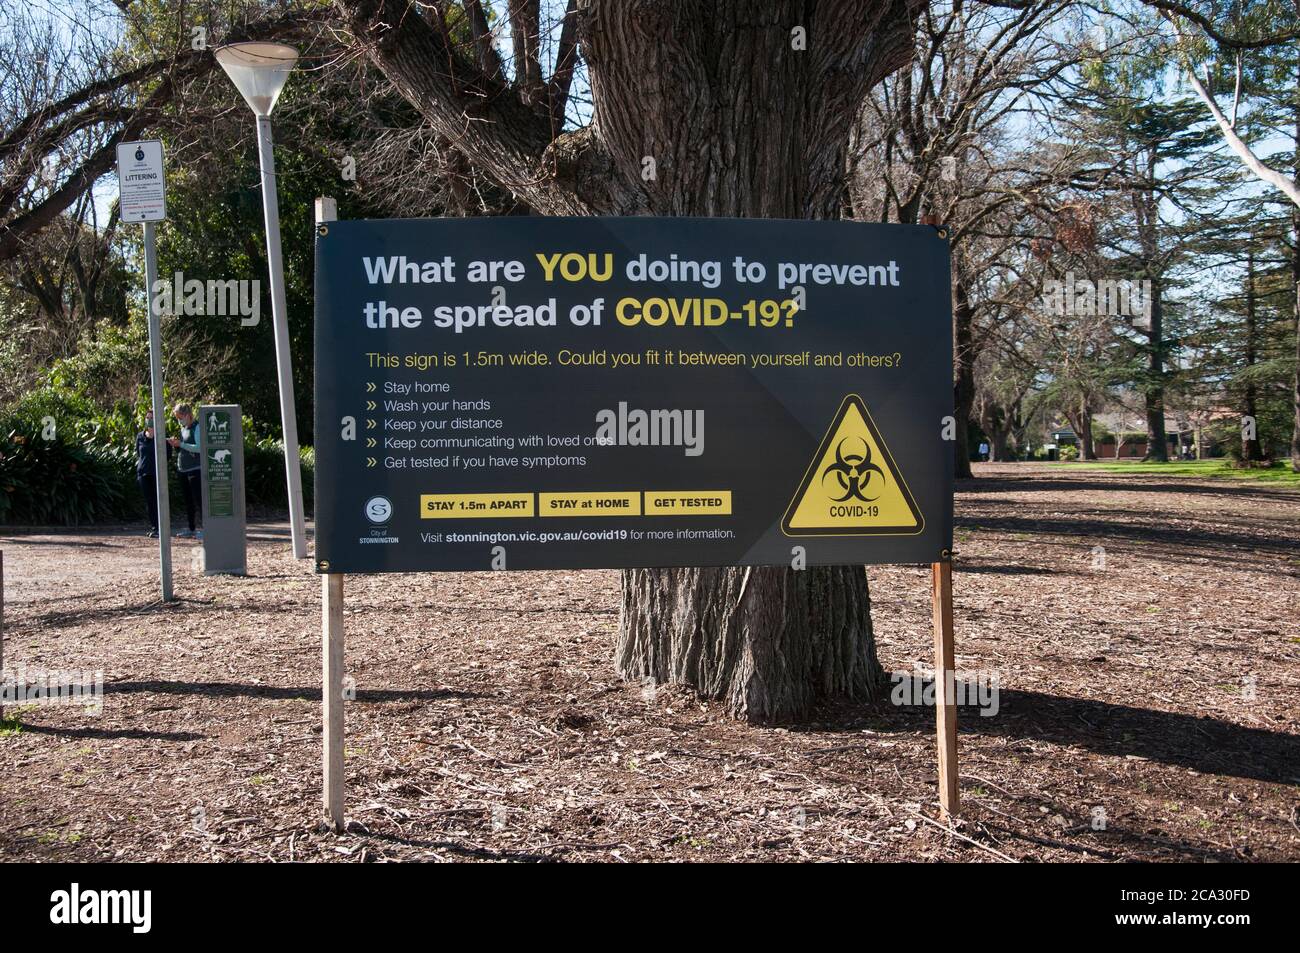 Signalisation de mise en garde à Central Park, dans la banlieue de Malvern, lors de l'urgence pandémique COVID-19 à Melbourne, Victoria, Australie, août 2020 Banque D'Images